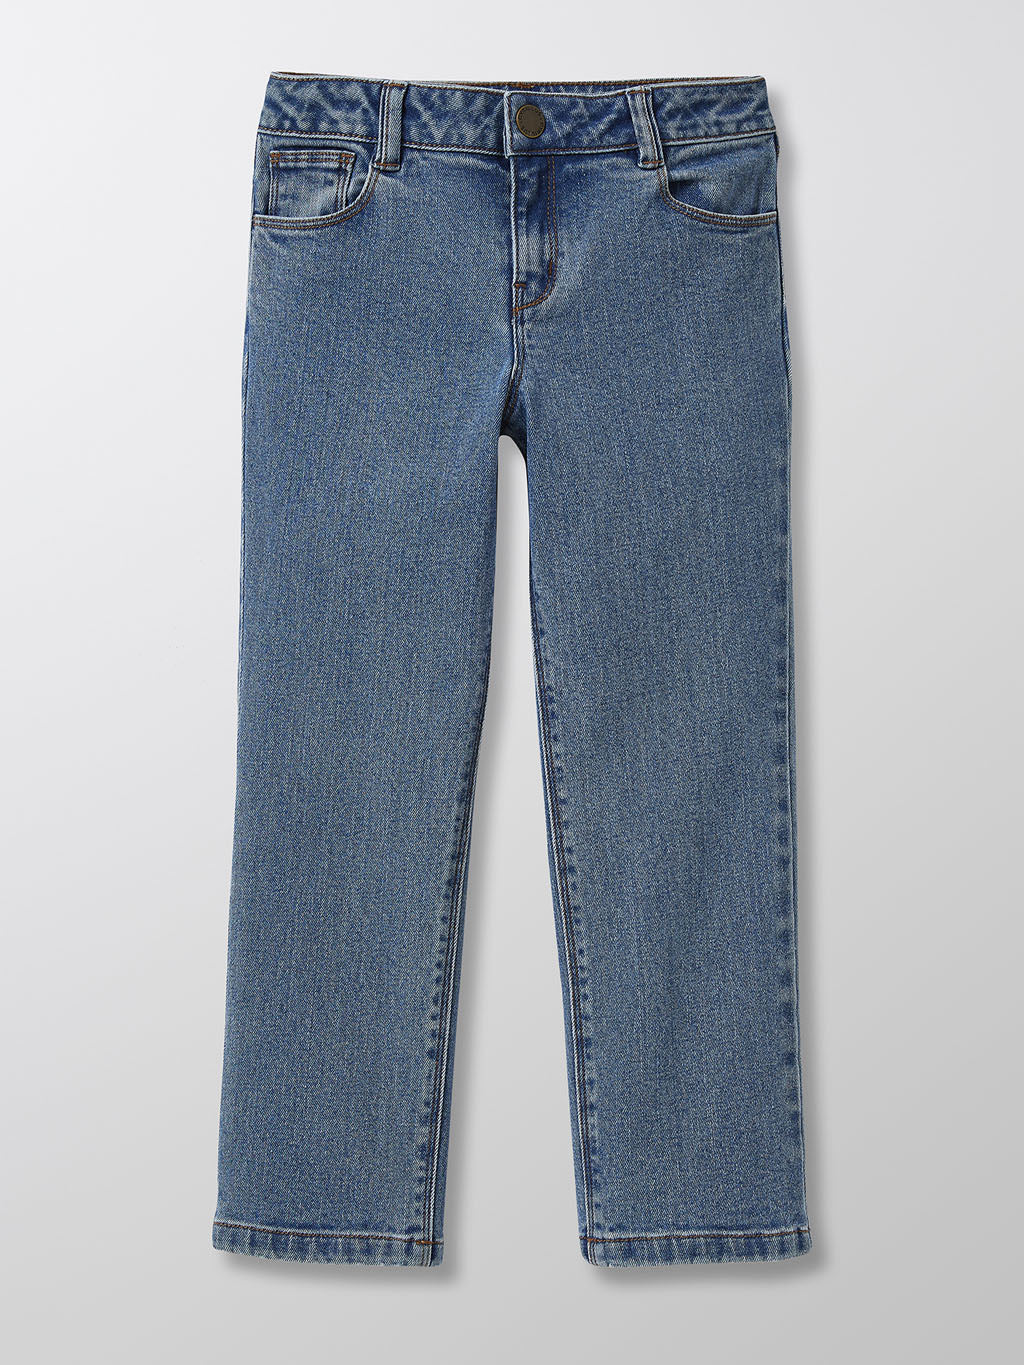 Lupilu Jeans Blau 12-18M Rabatt 94 % KINDER Hosen Jean 